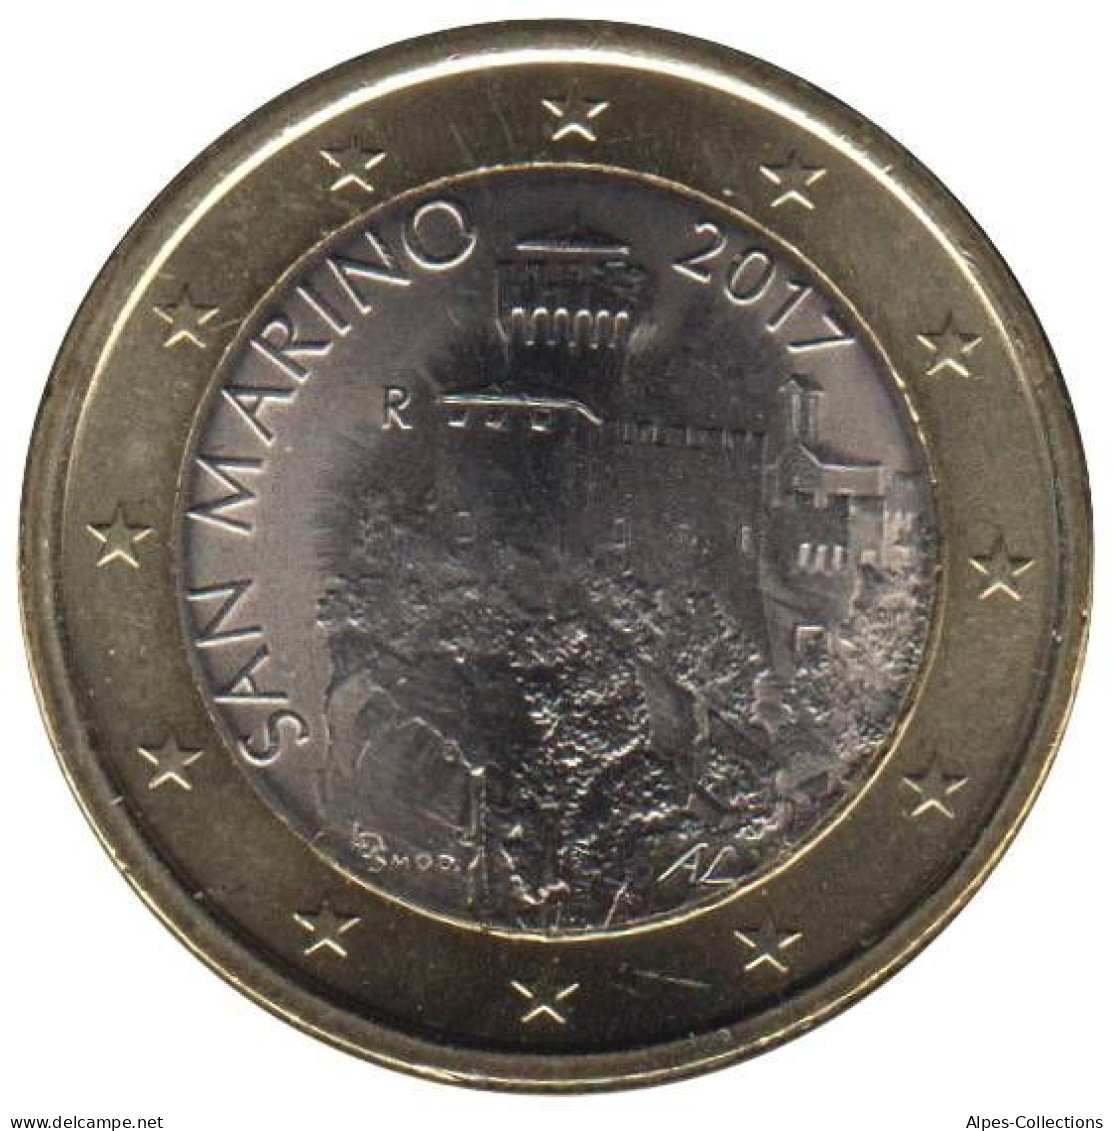 SA10017.1 - SAINT MARIN - 1 Euro - 2017 - San Marino